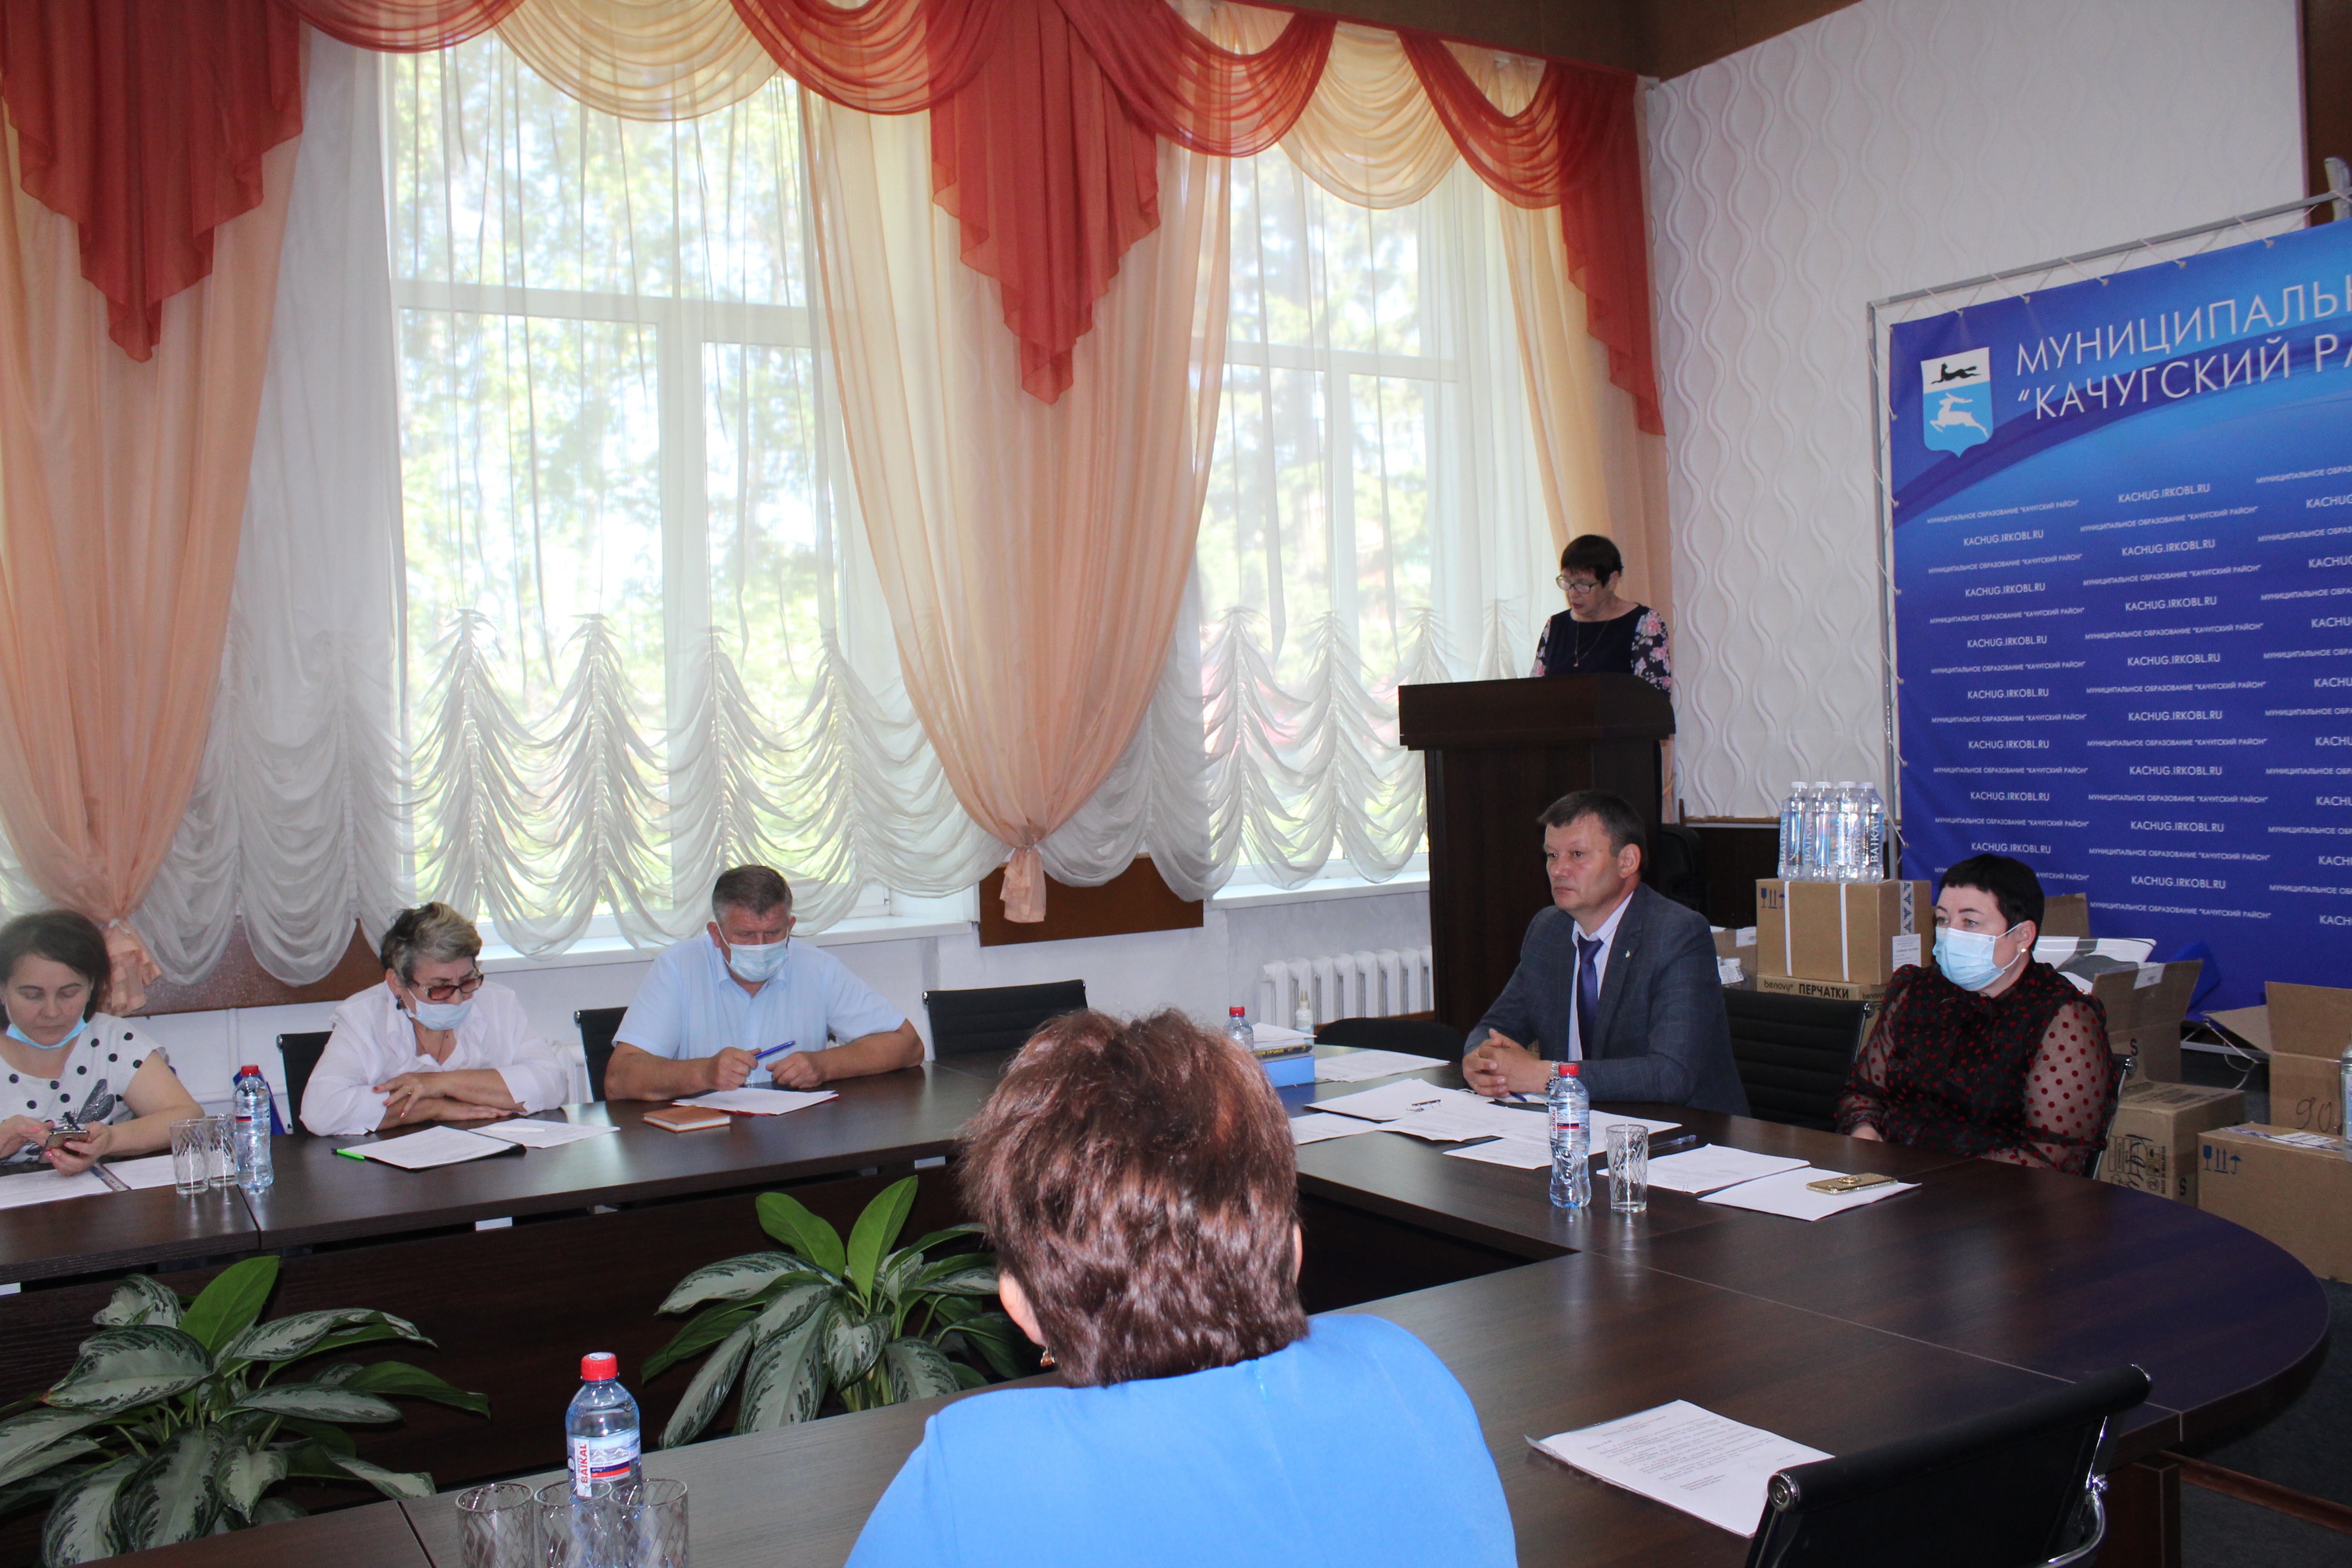  22 июня 2020 года в администрации Качугского района прошло заседание Думы муниципального района